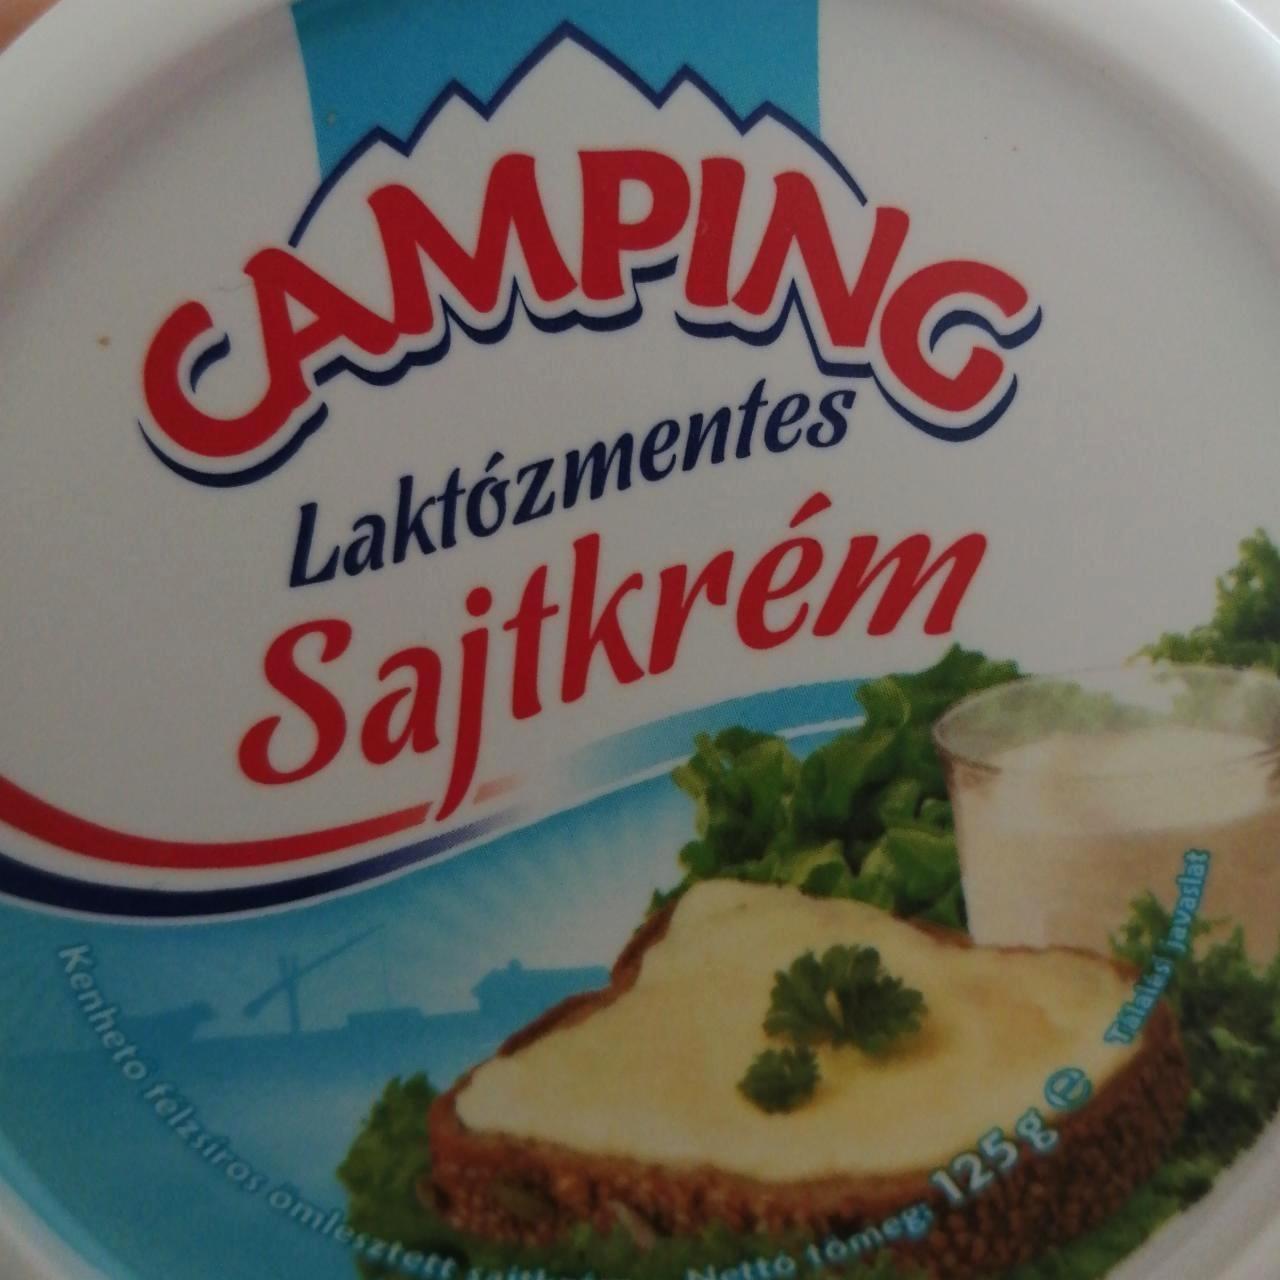 Képek - Laktózmentes sajtkrém Camping